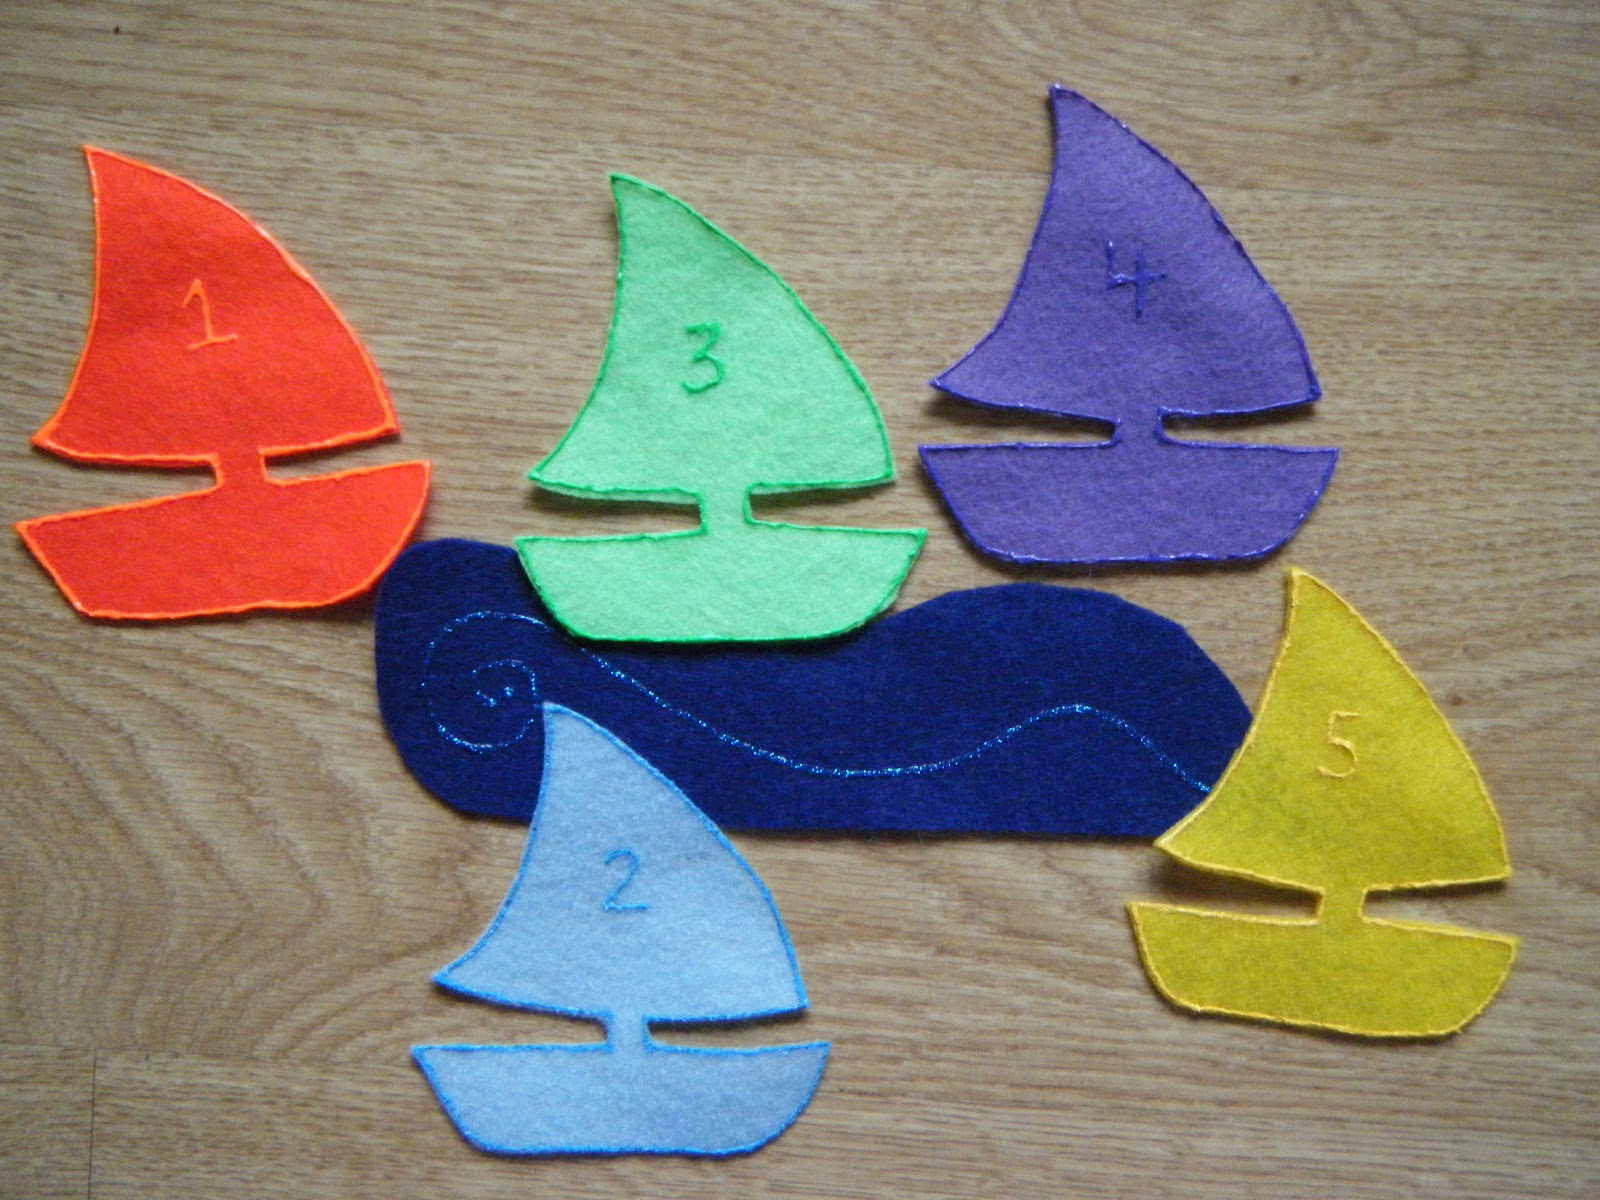 Felt Board Ideas: Five Little Sailboats Felt Board Poem